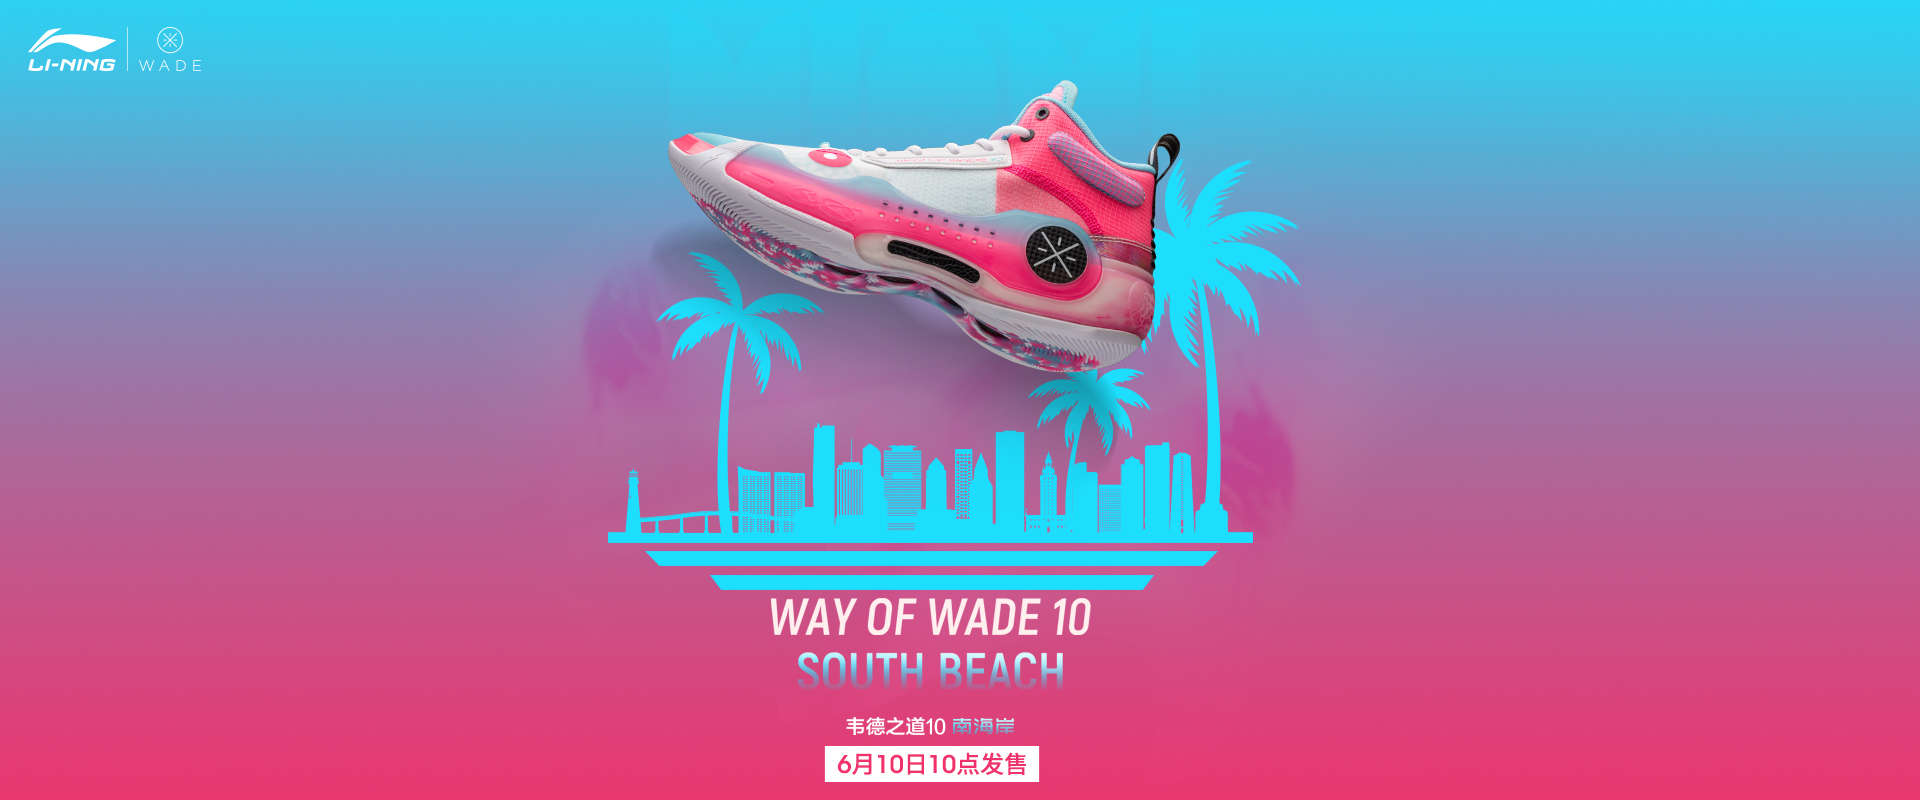 Way of Wade Shoes